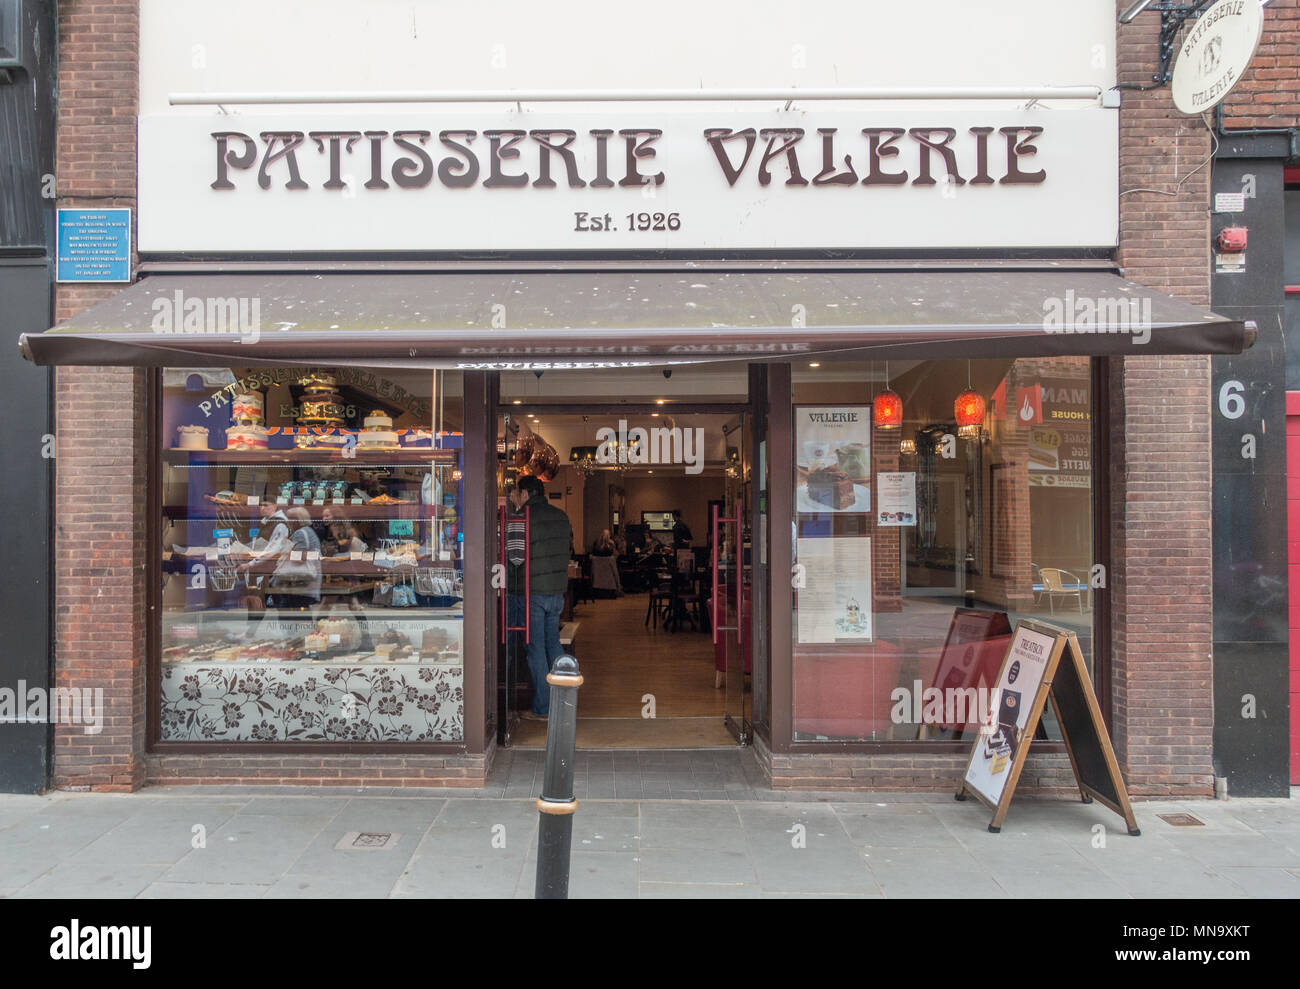 Patisserie Valerie bakers in worcester, UK Stock Photo